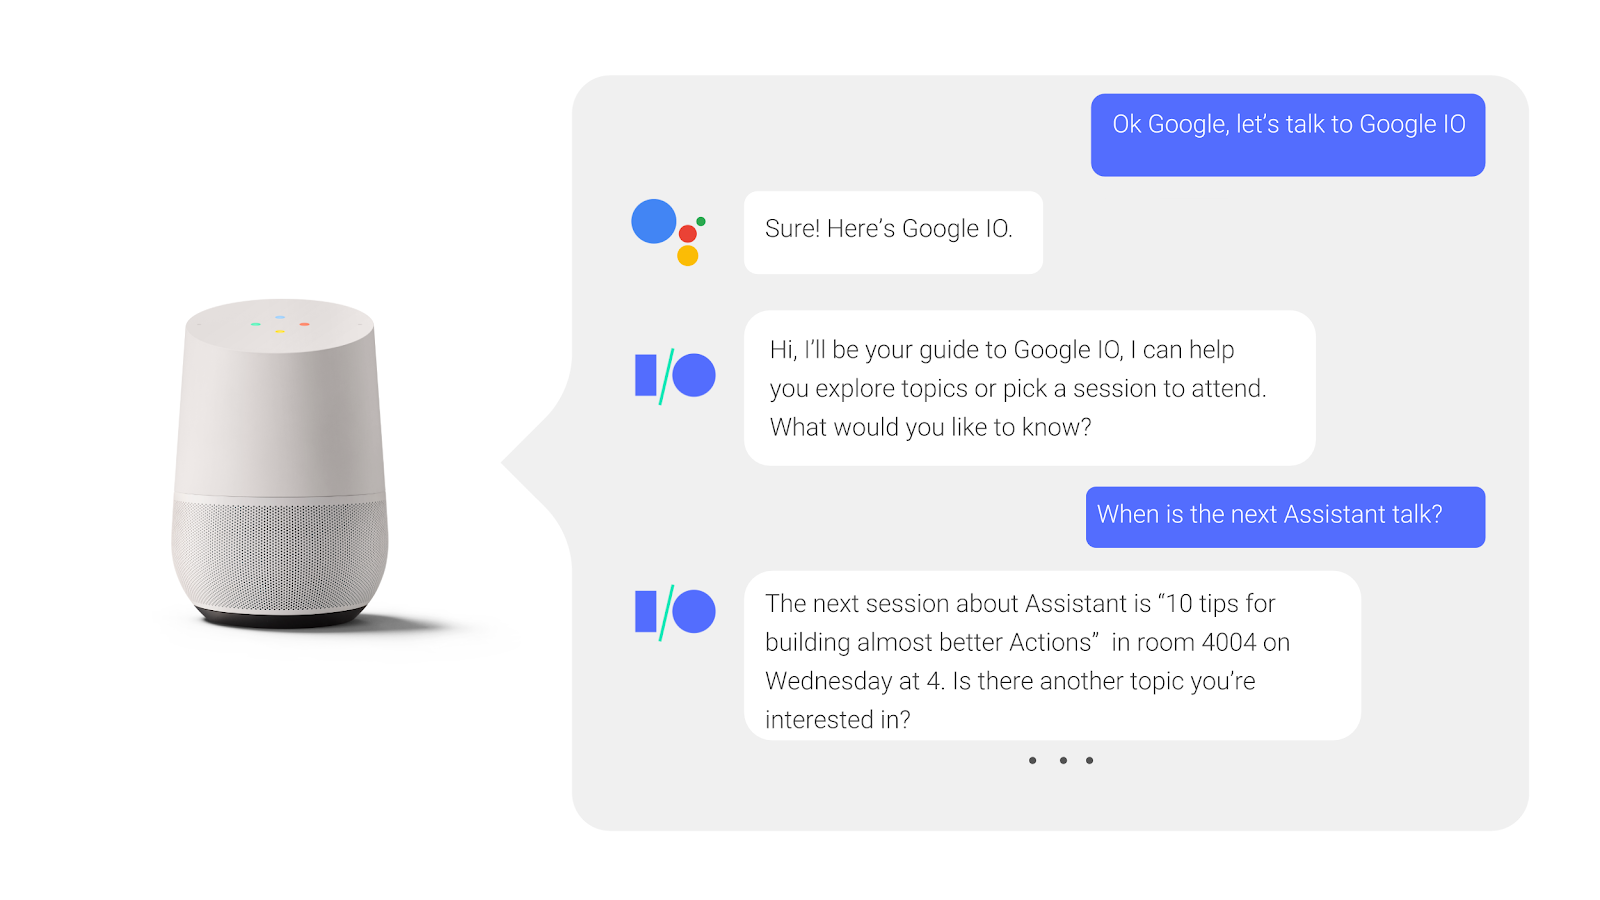 בשיחה הלוך ושוב עם Google Assistant, משתמש שואל על שאלות ועונה להן מתי מתקיימת שיחת ועידה.